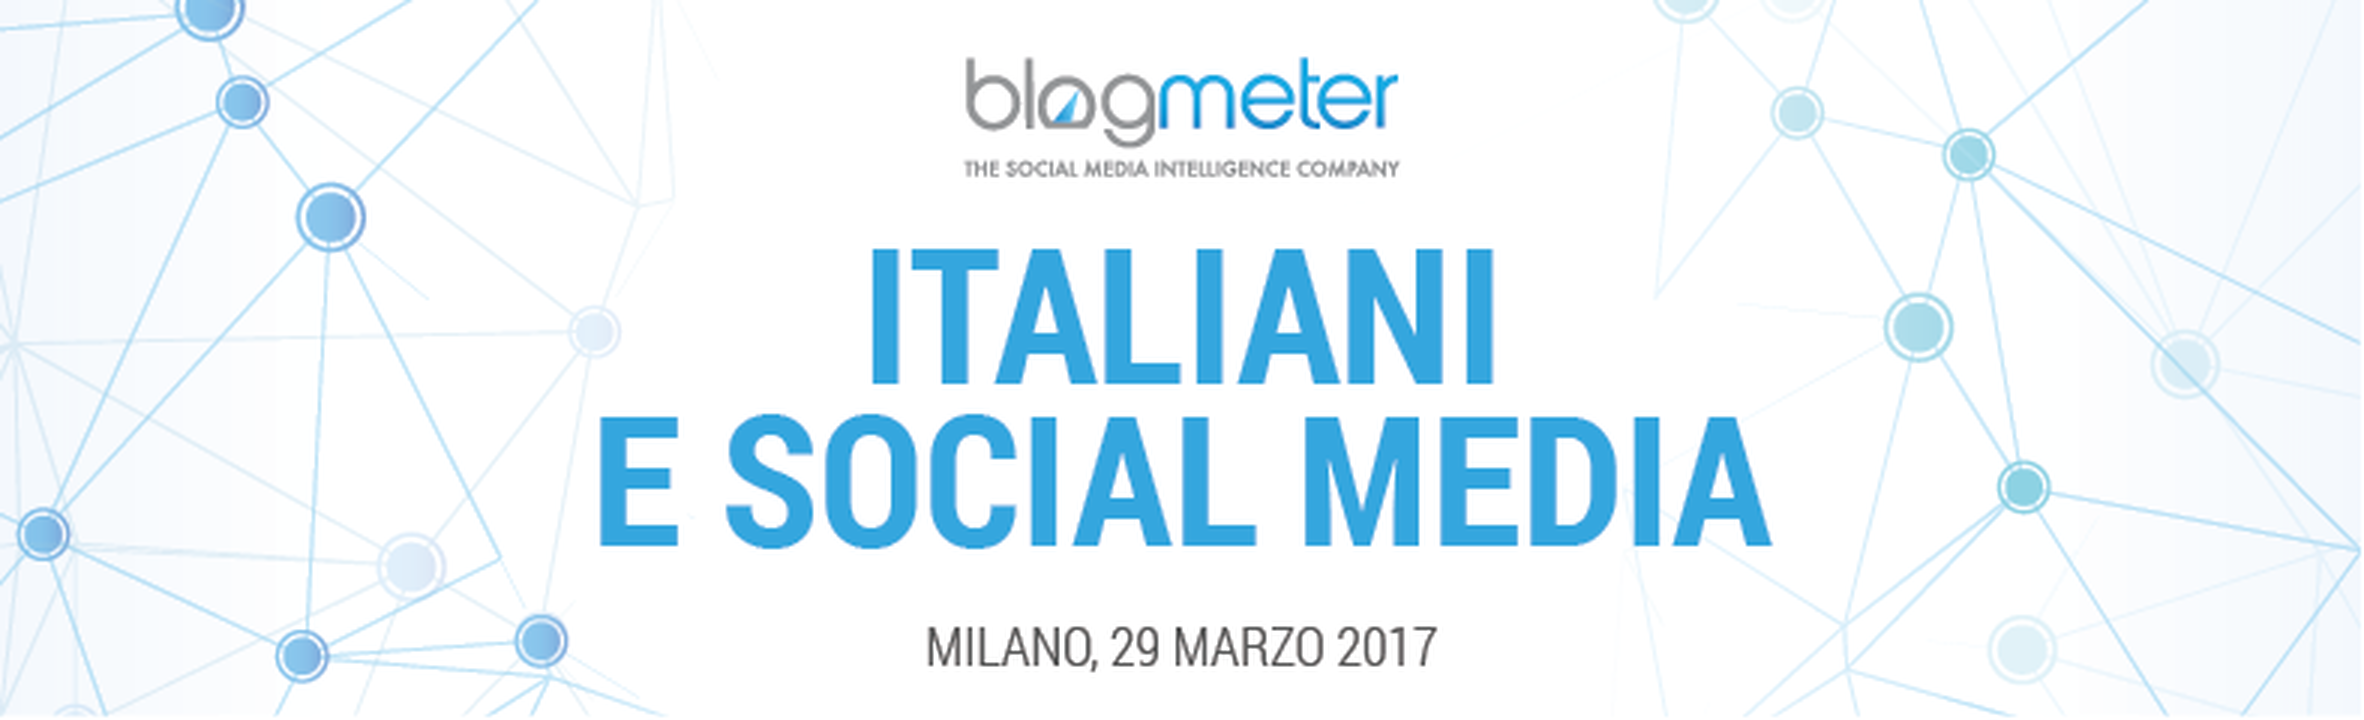 Blogmeter presenta la ricerca “Italiani e Social Media”